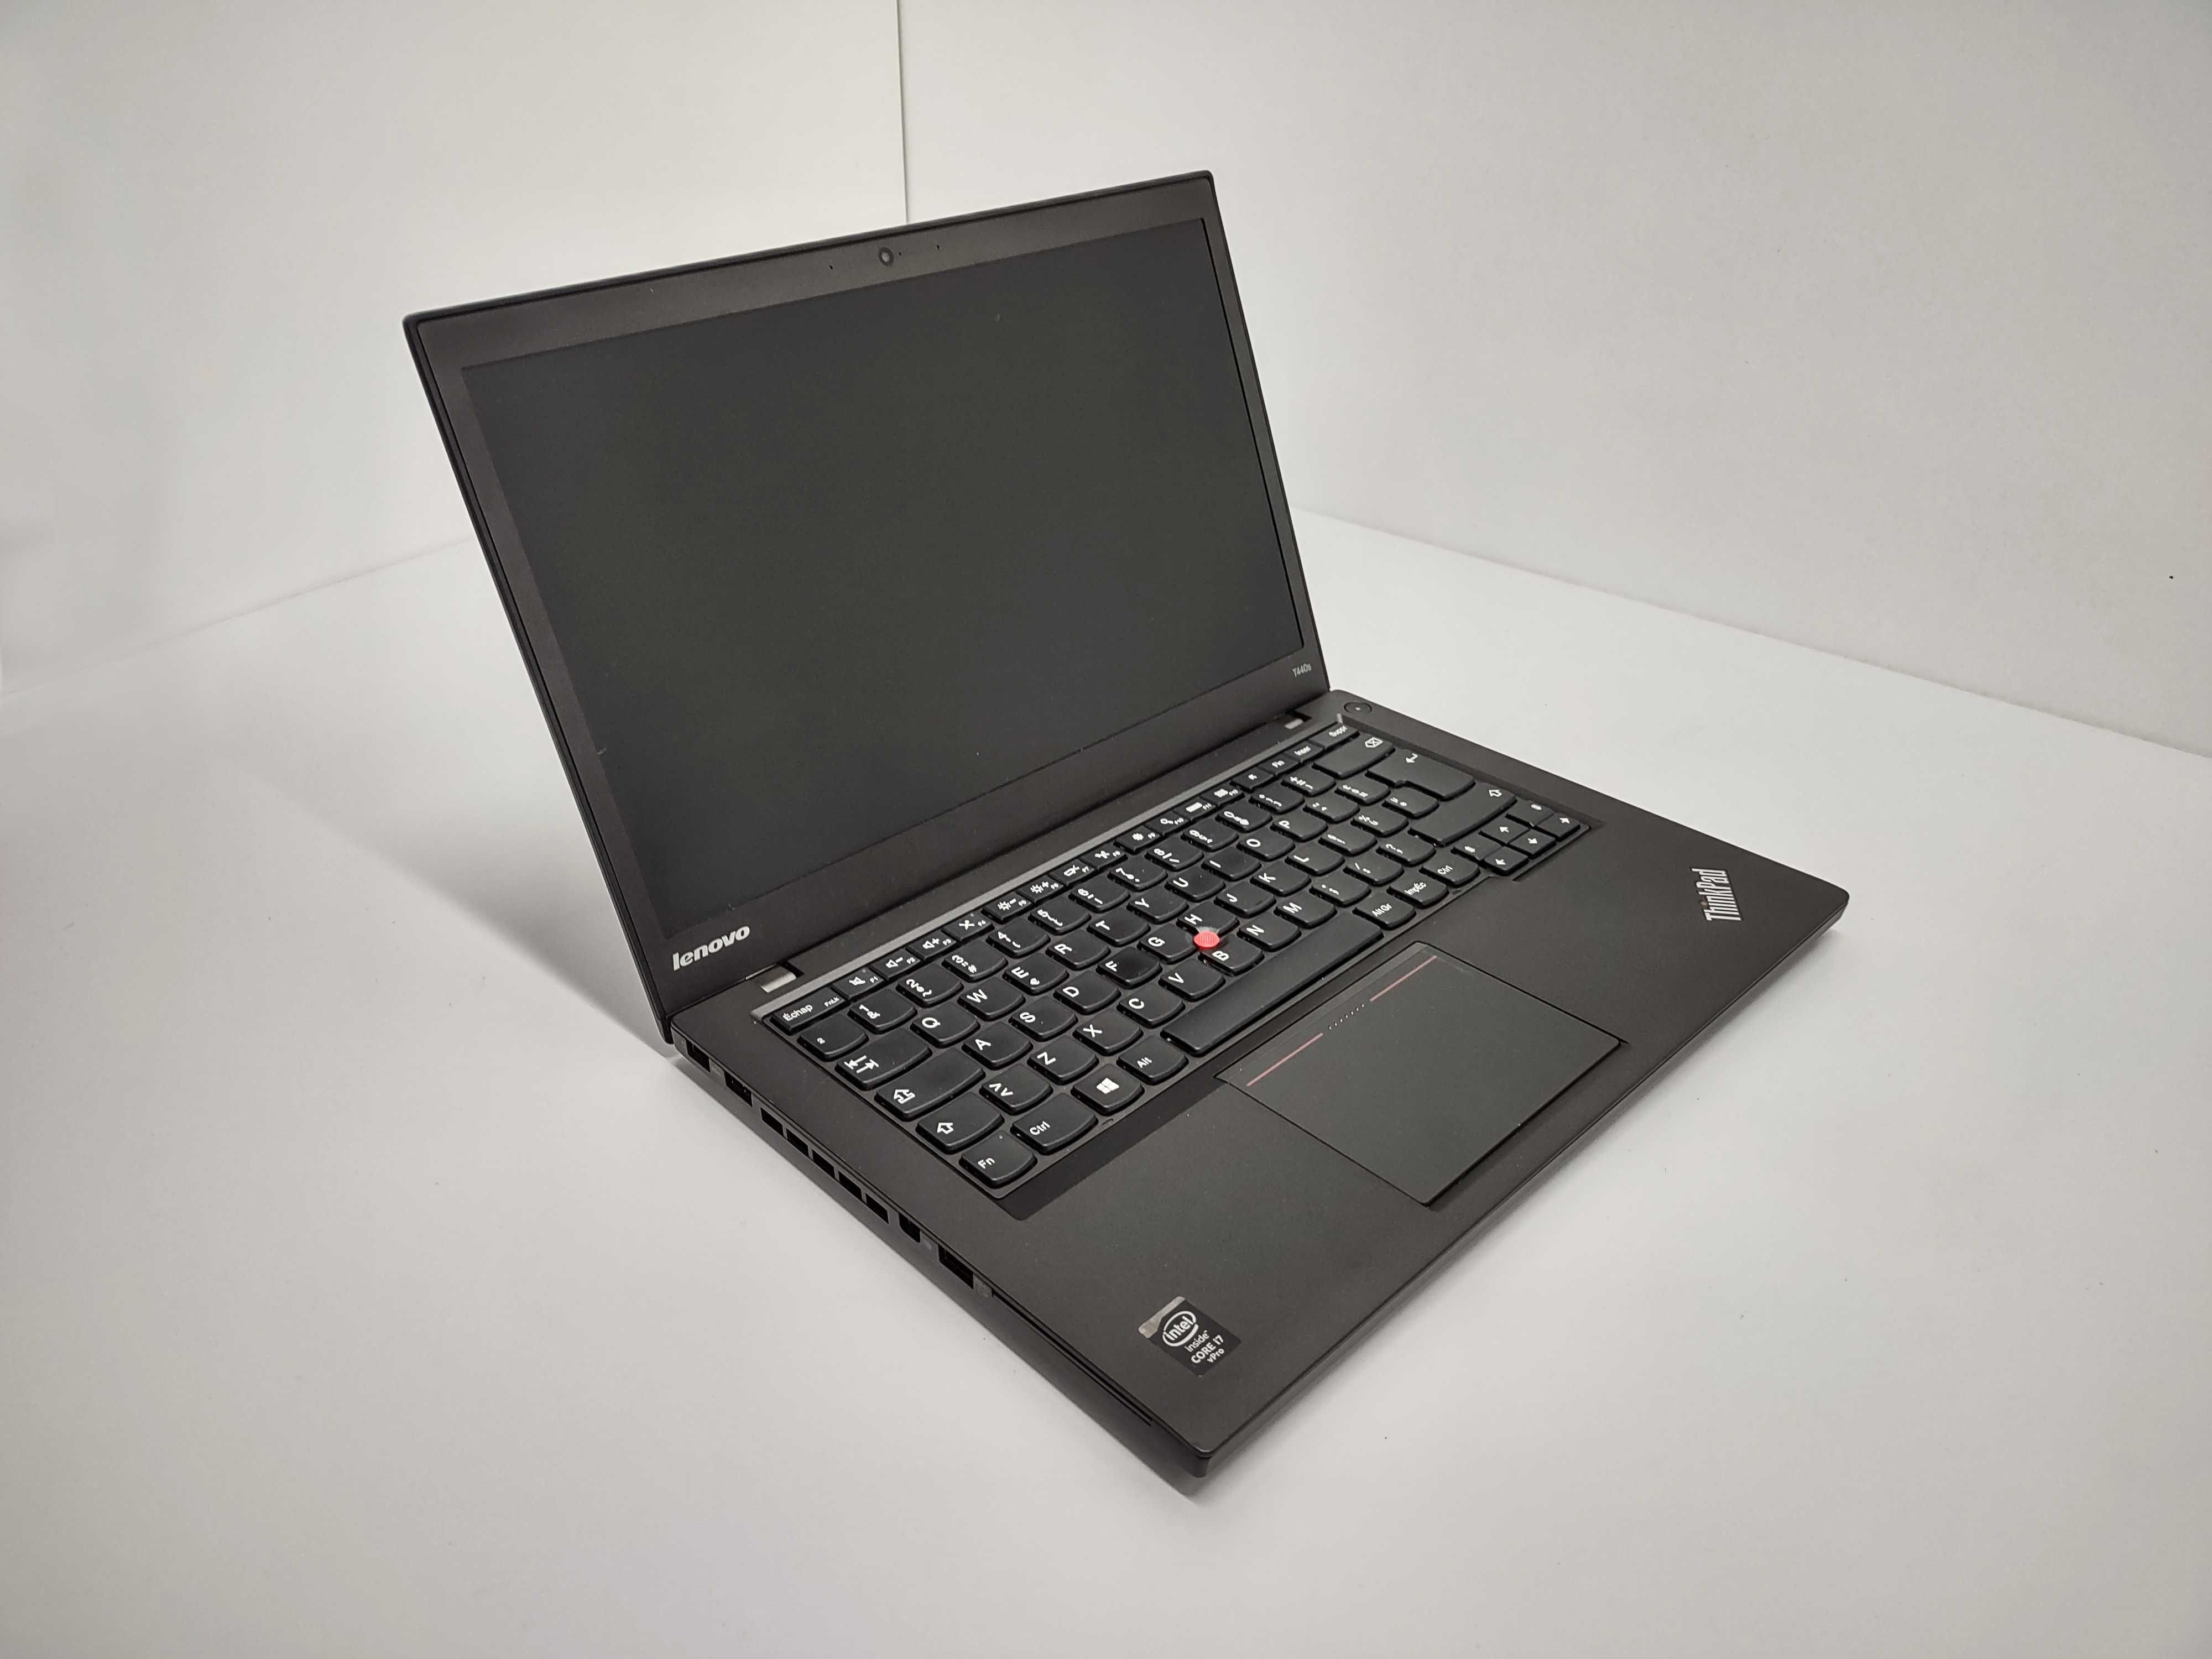 Lenovo ThinkPad T440s FHD intel i7 256 GB SSD 8 / 12 / 16 GB RAM